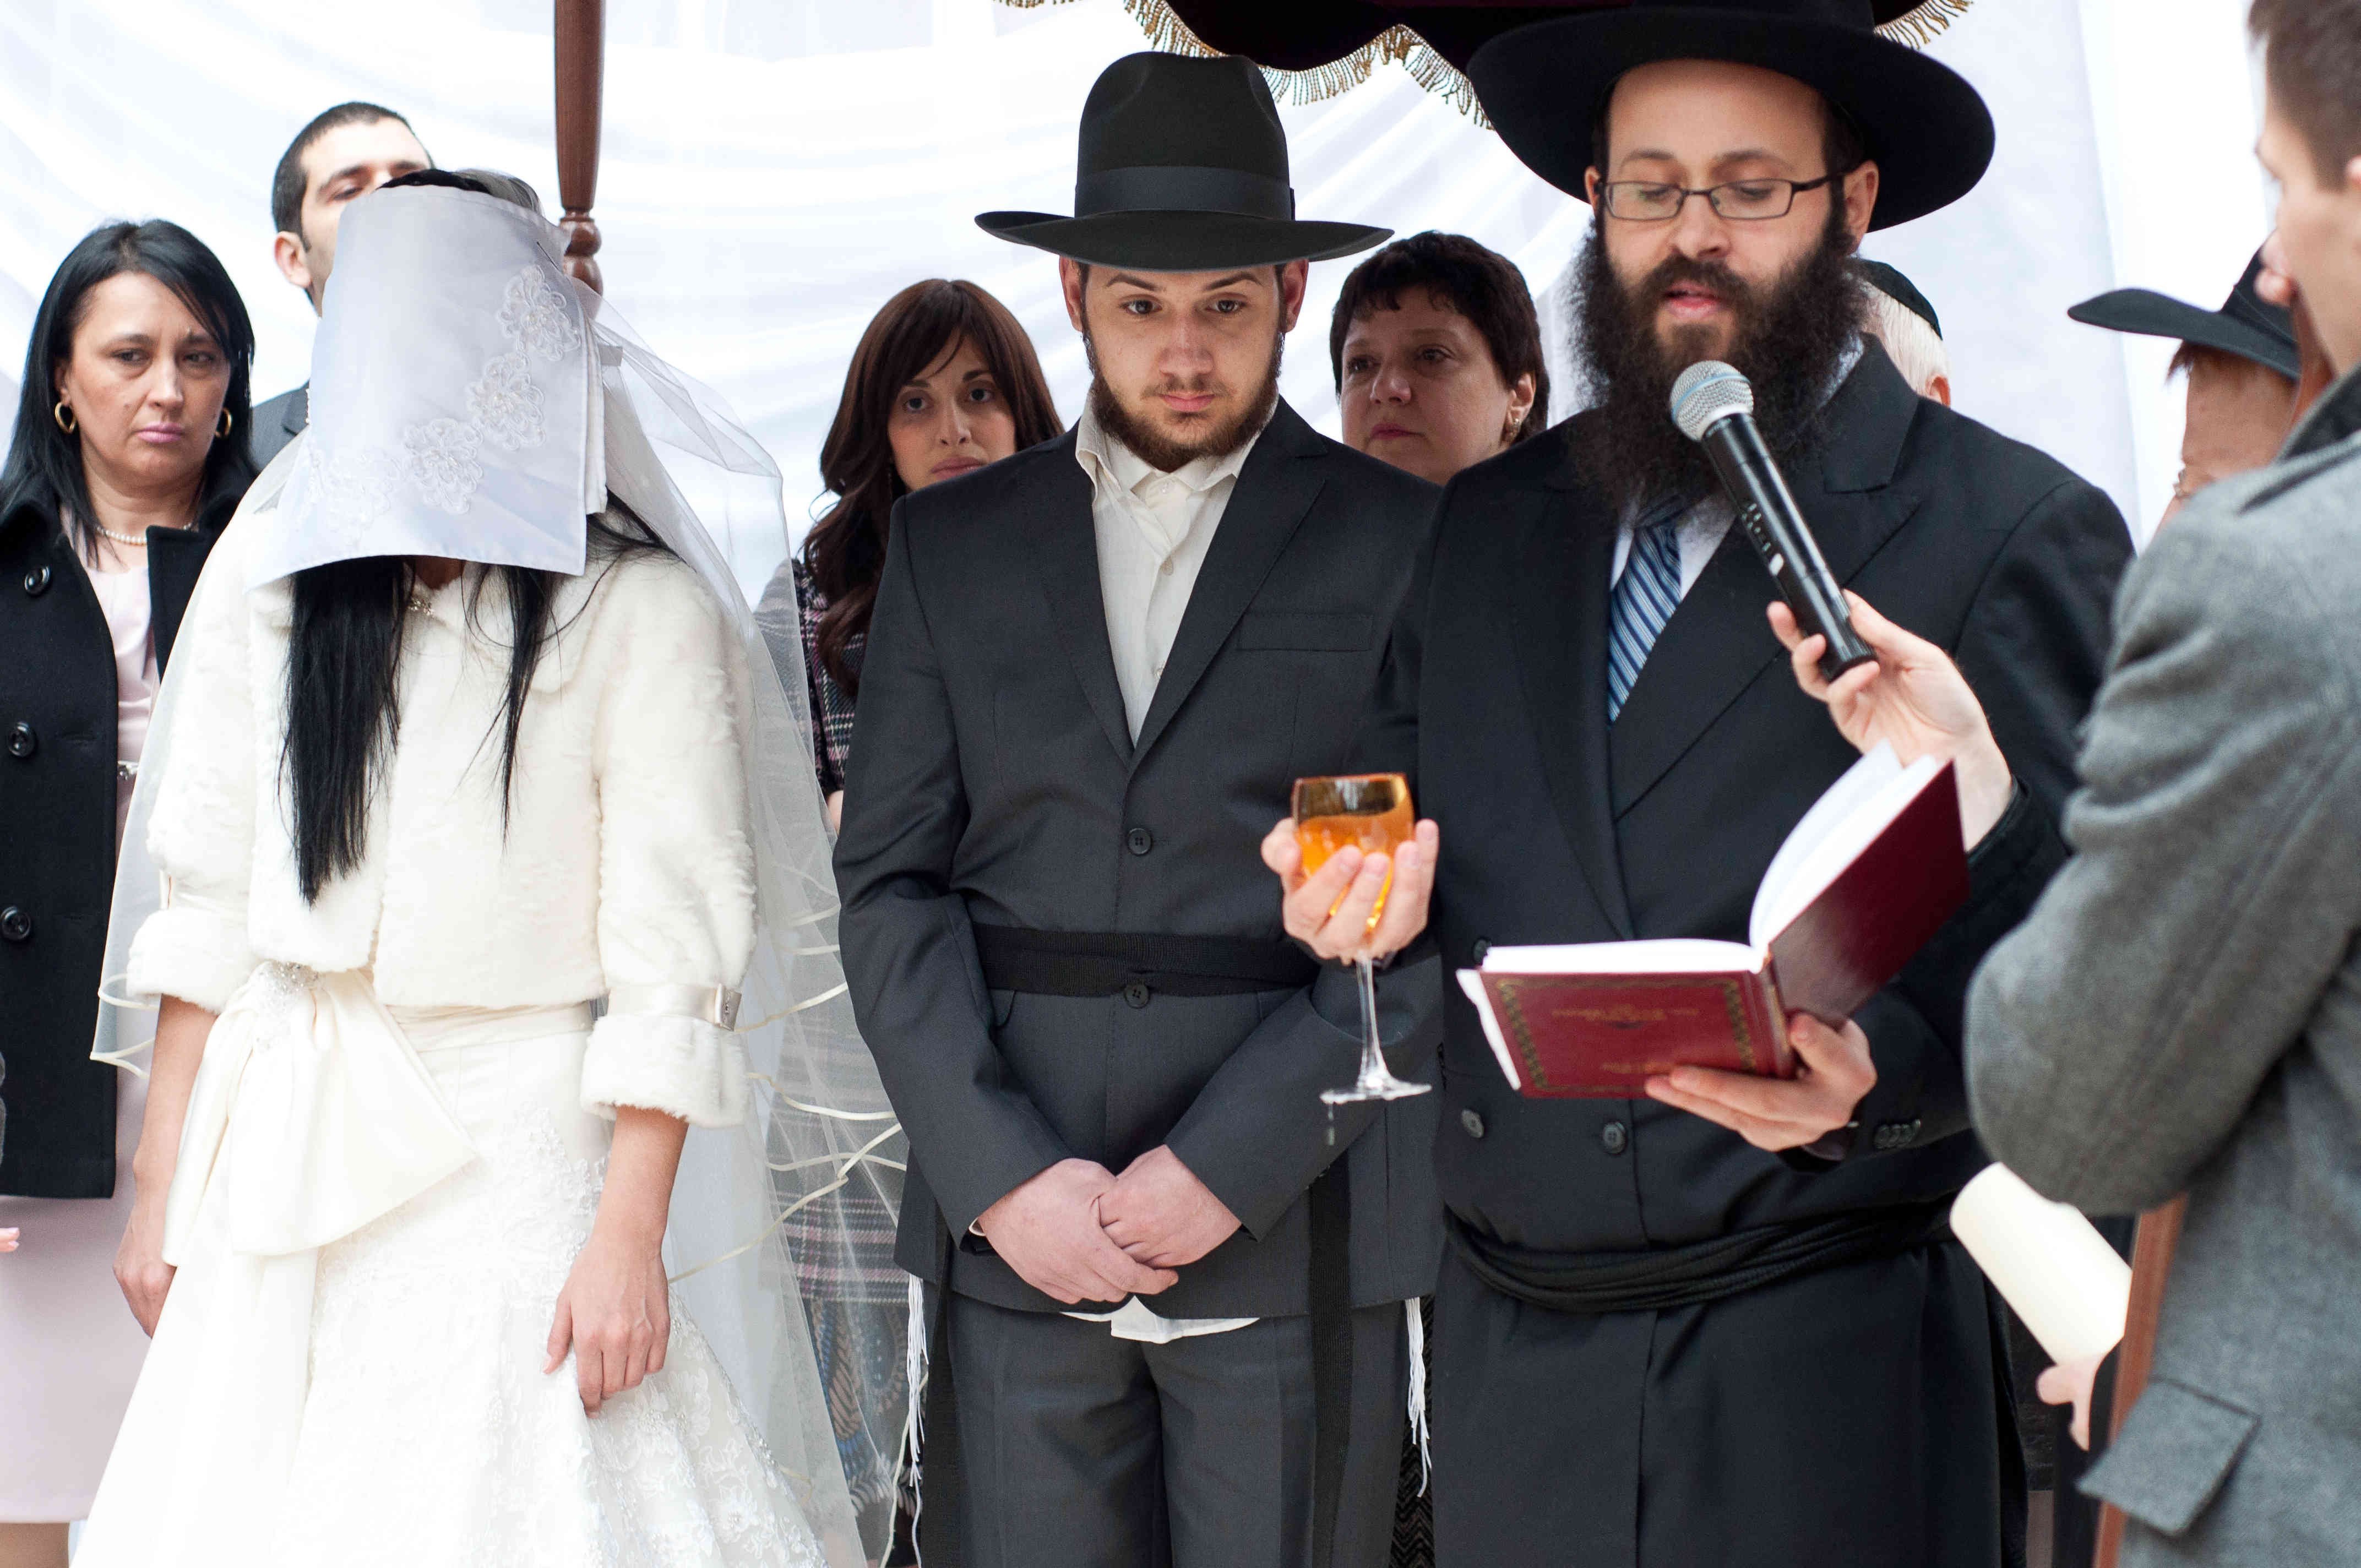 Еврейские официальные сайты. Ортодоксальная Еврейская свадьба. Еврейская свадьба под хупой. Одежда ортодоксов в Израиле.